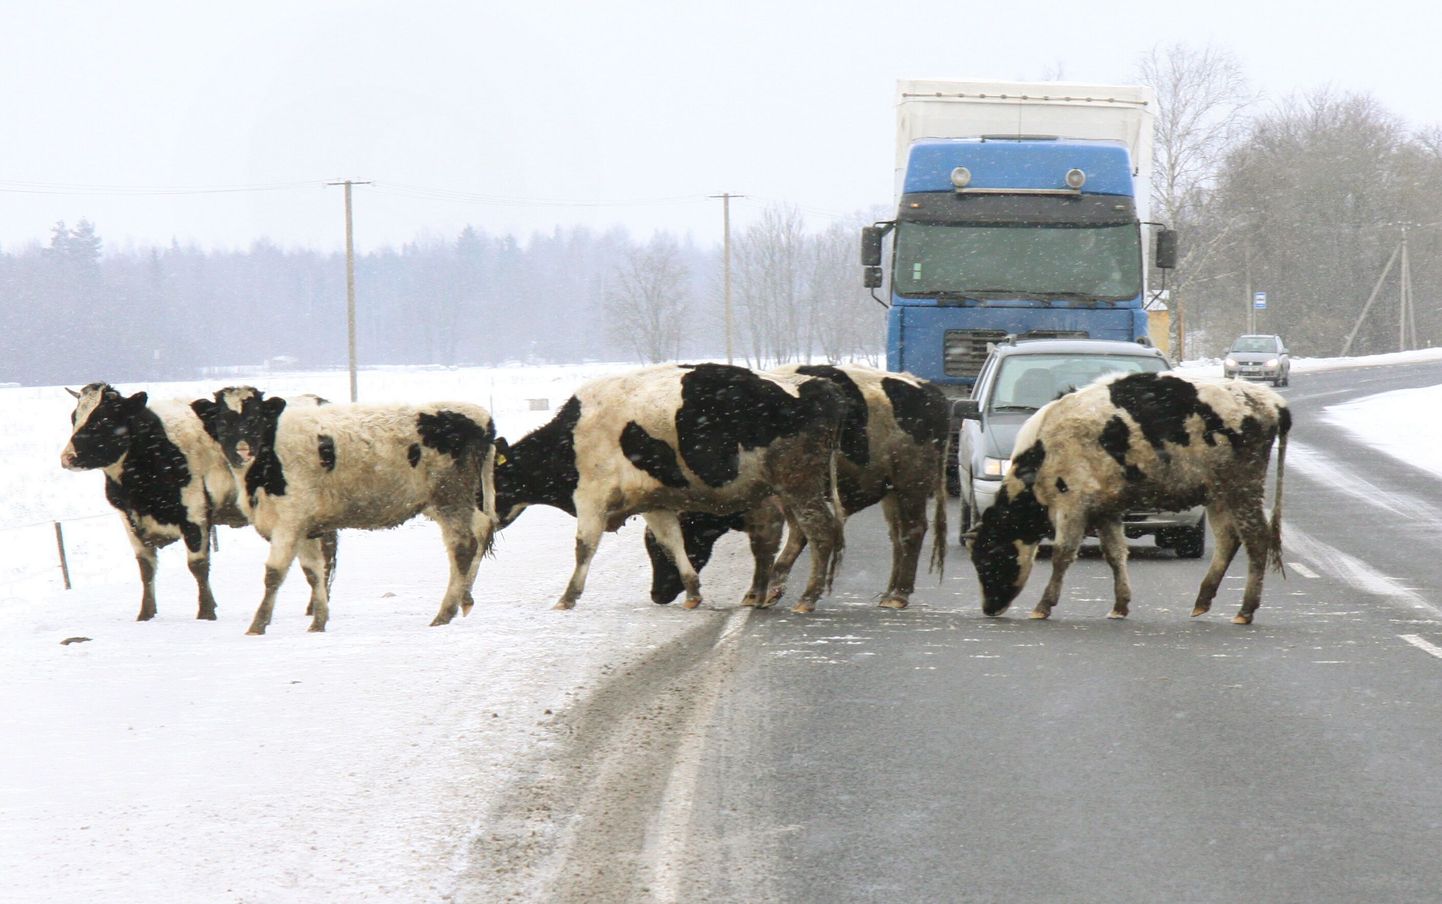 Mannare külas elava taluniku isepäi jalutavad loomad on Tori vallas põhjustanud liiklusõnnetusi varemgi. Pärnu Postimehe fotograafi kaamera ette jäi loomakari veebruaris.